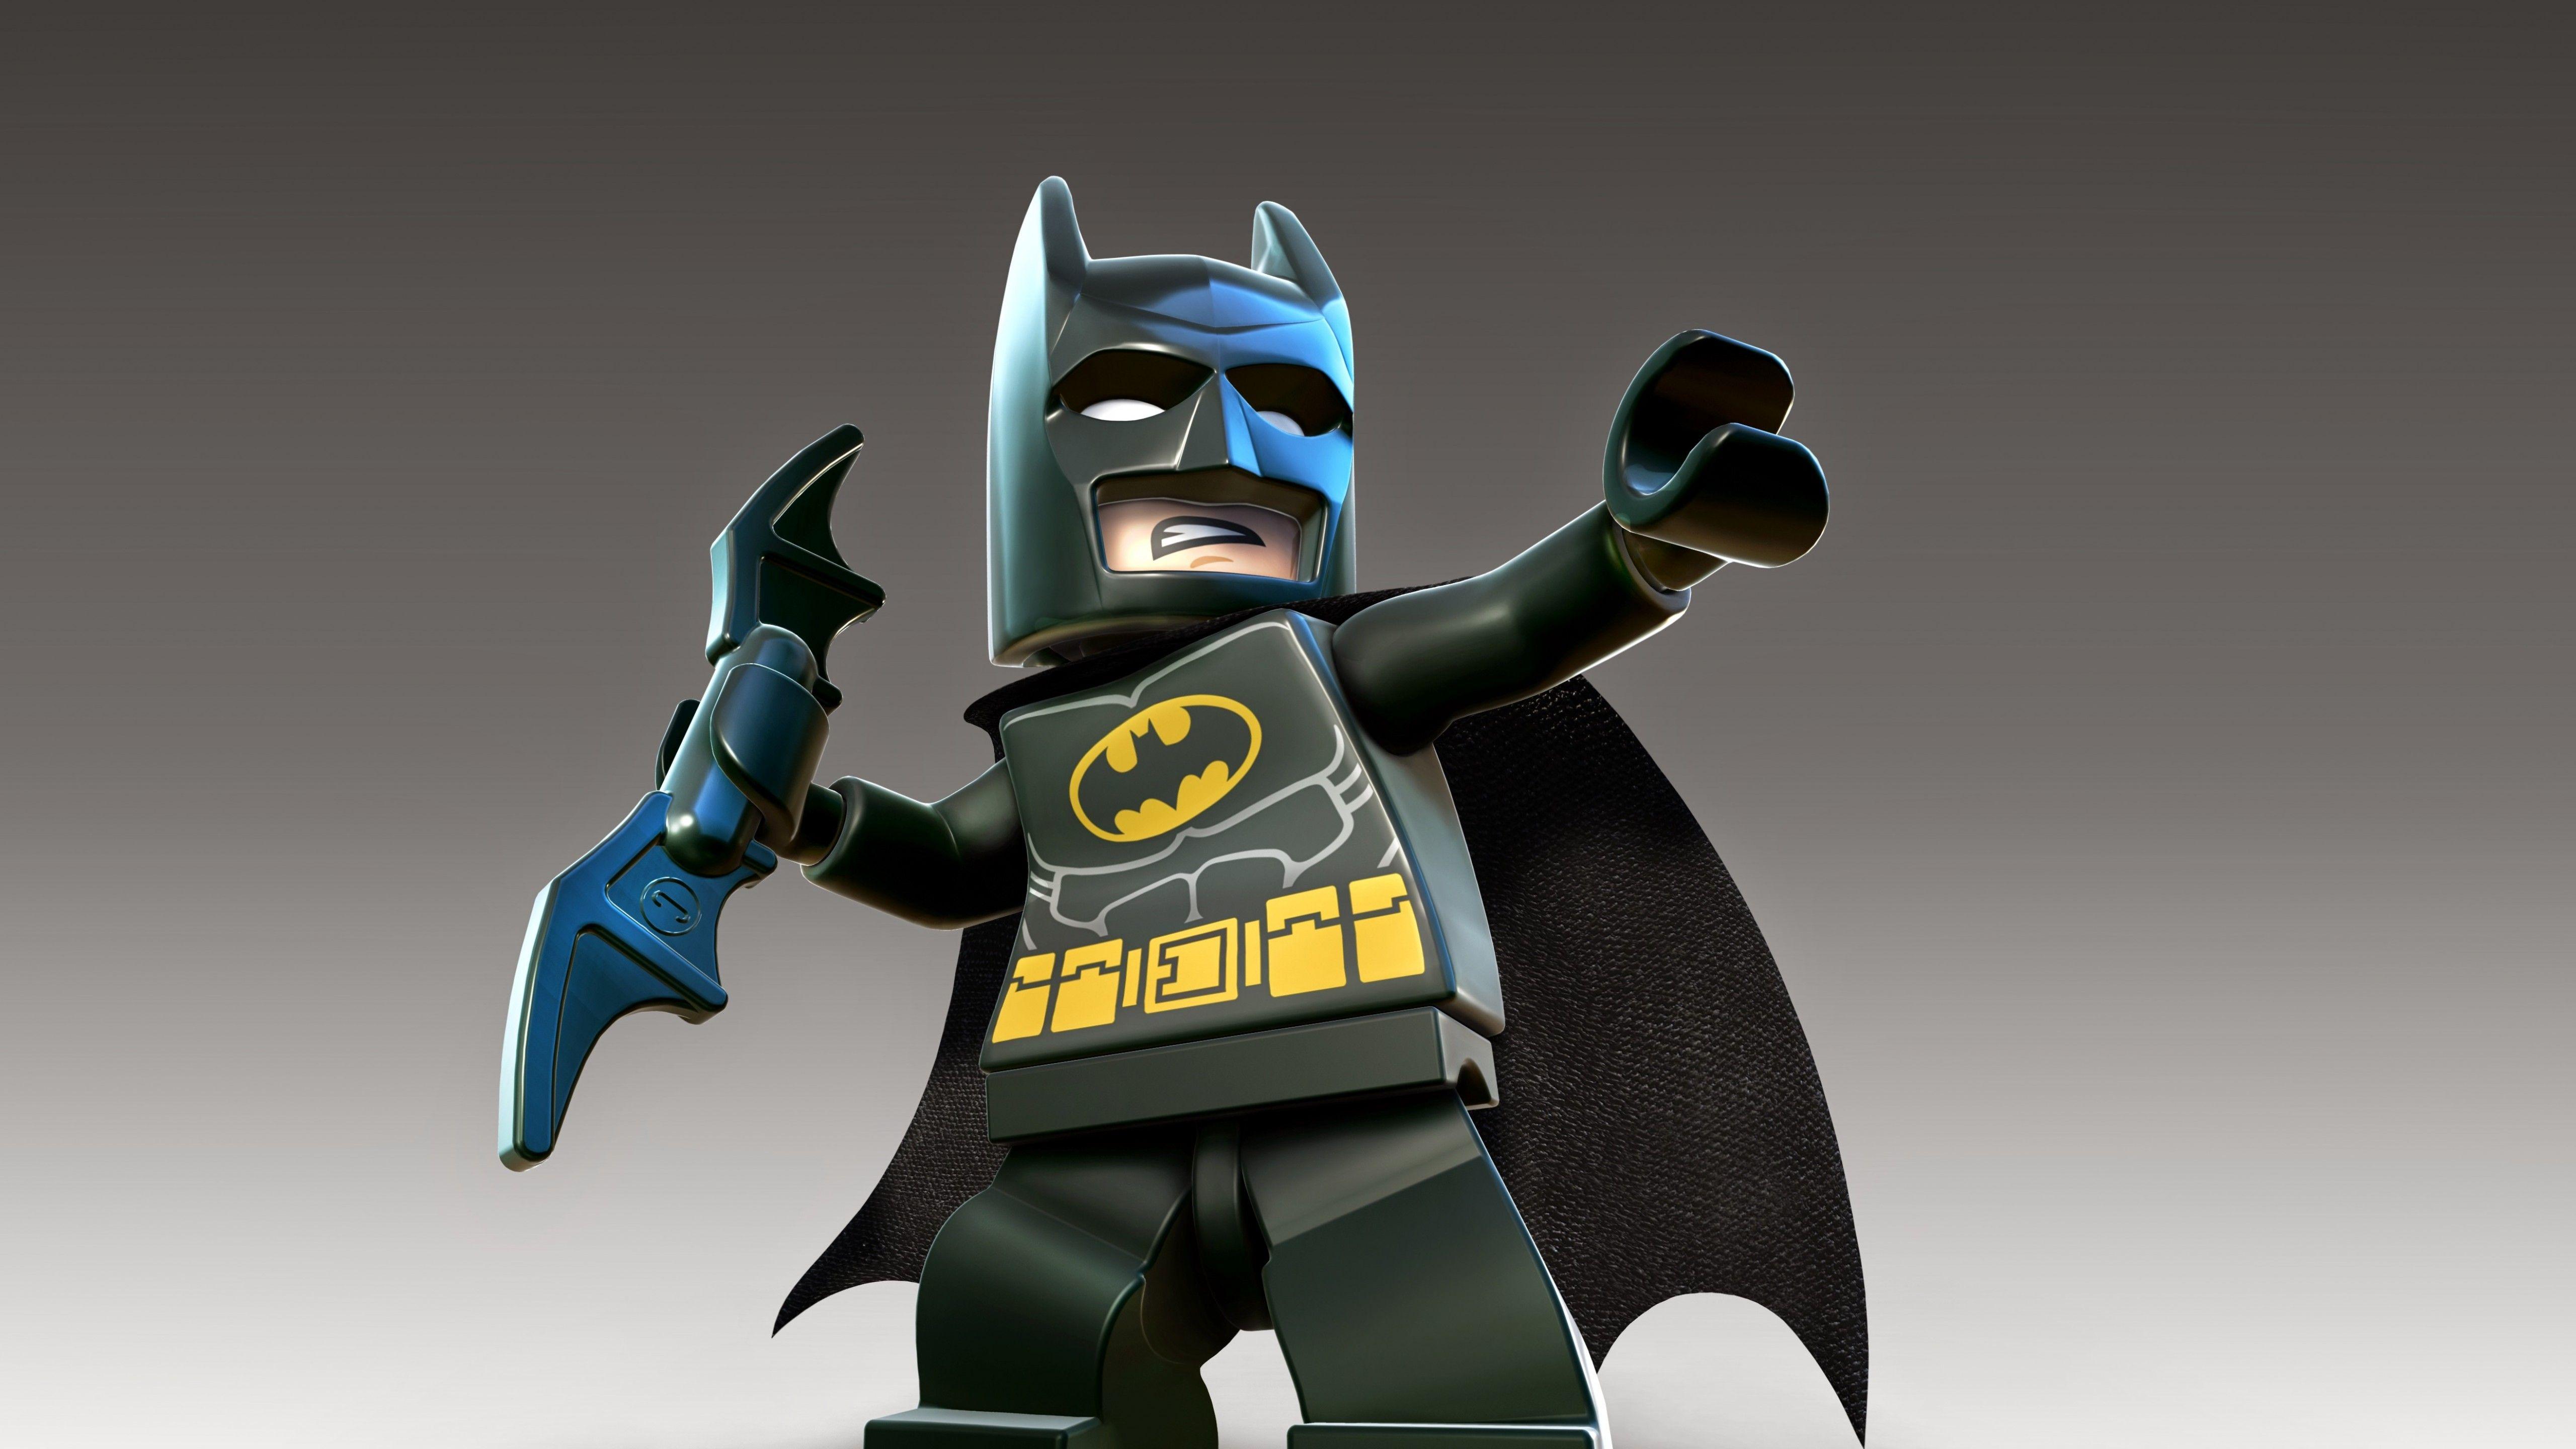 Wallpaper LEGO Batman, DC Super Heroes, HD, 4K, Games